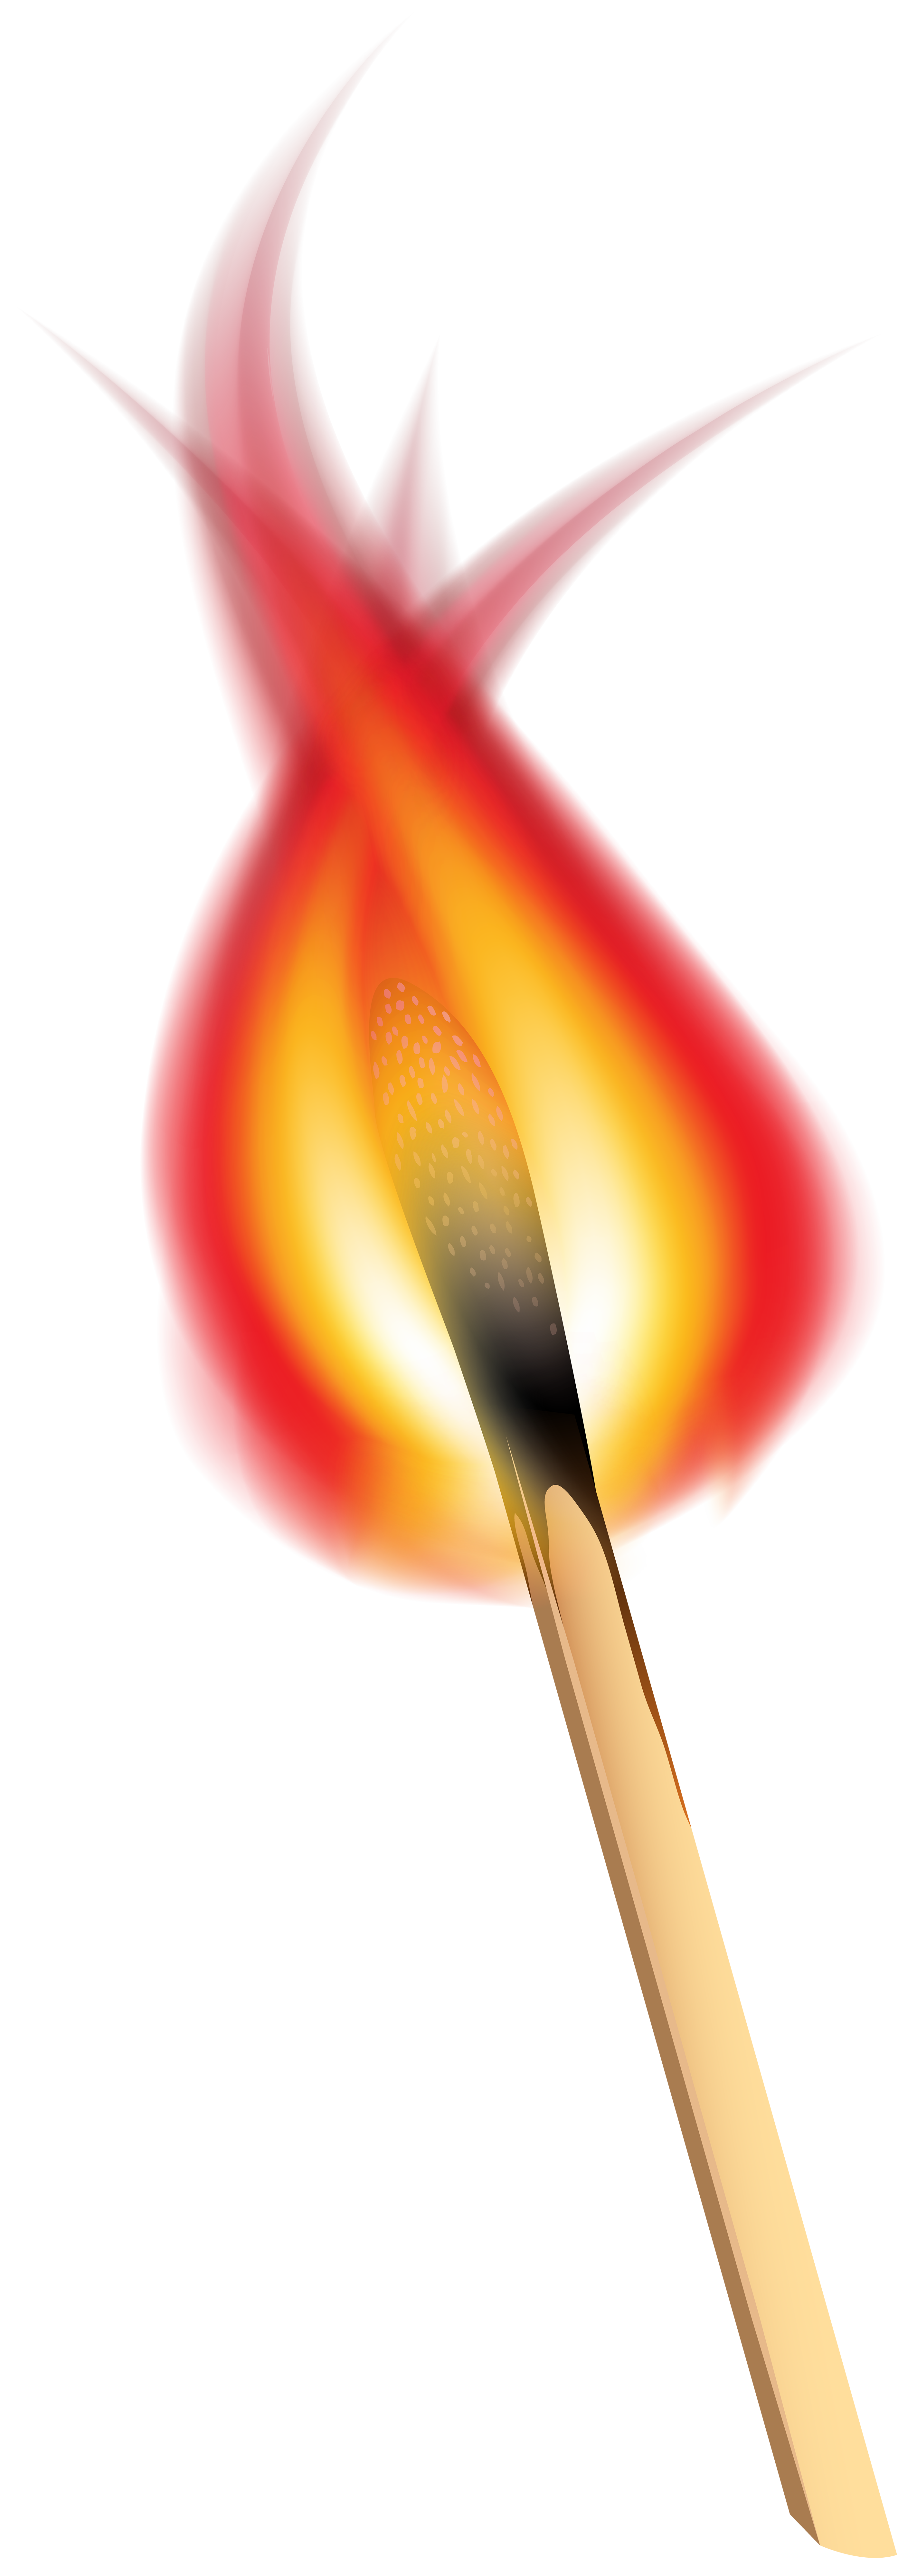 match clipart match flame